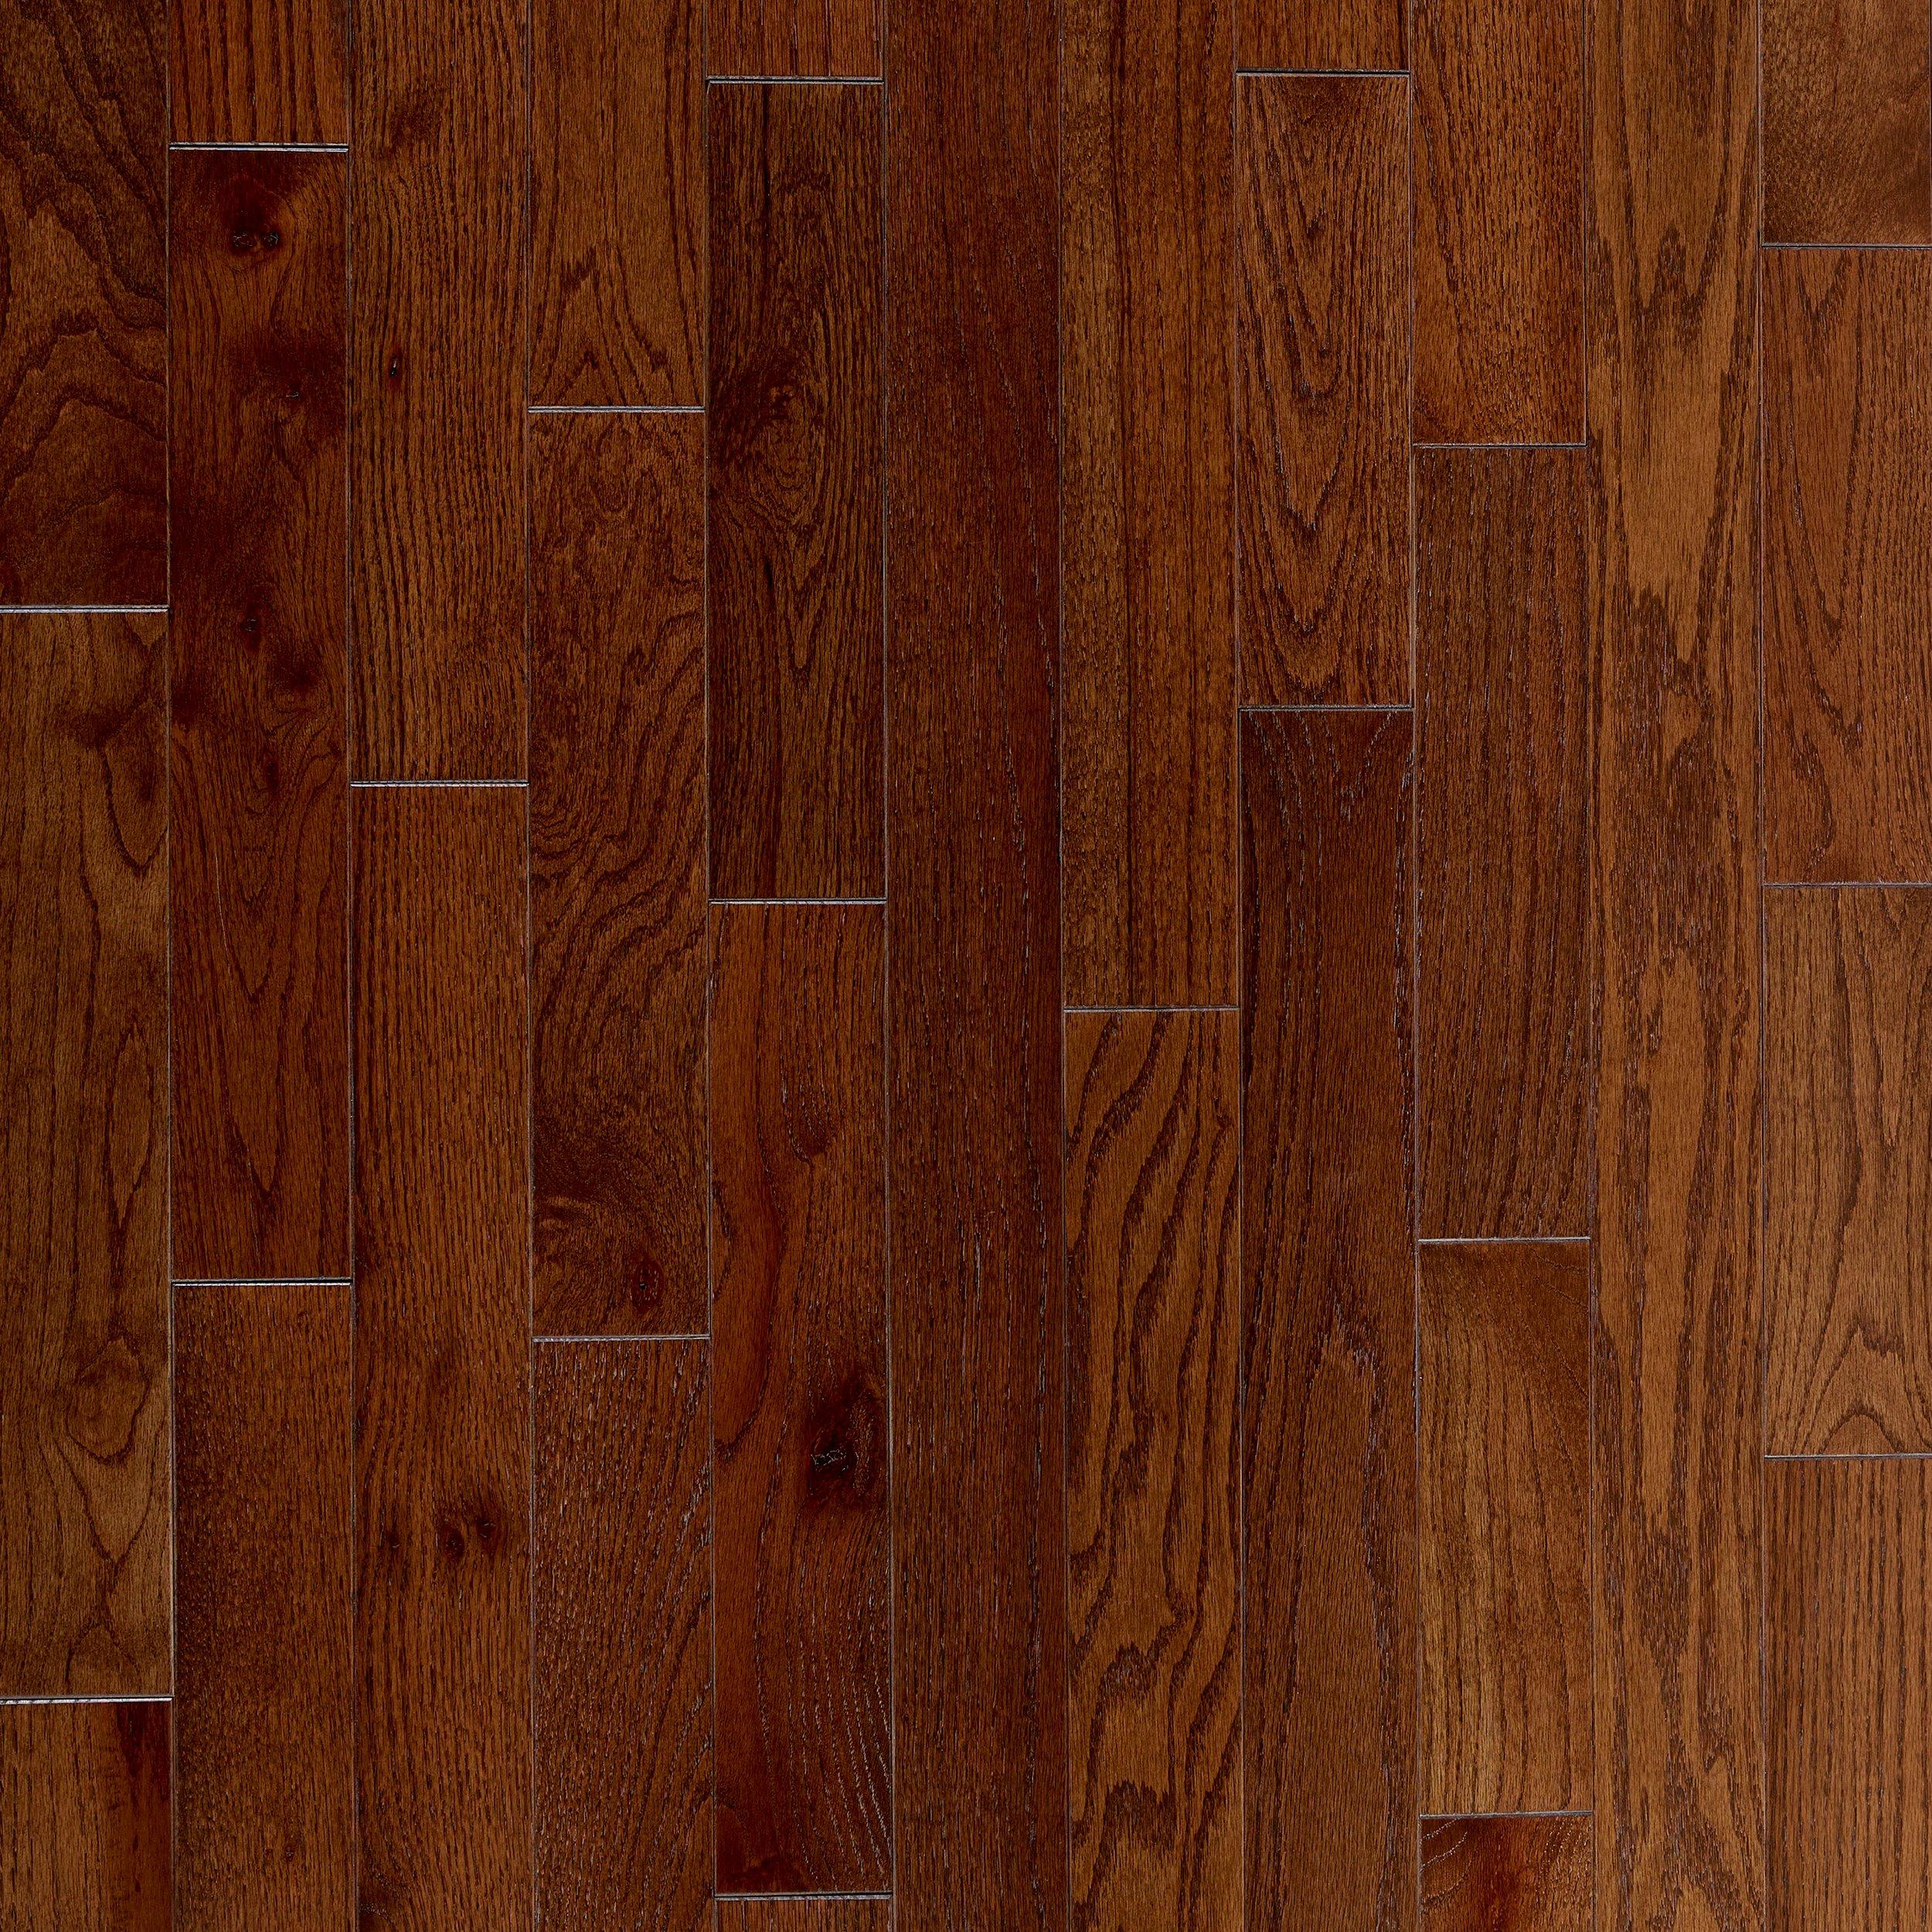 Sierra Red Oak Smooth Solid Hardwood